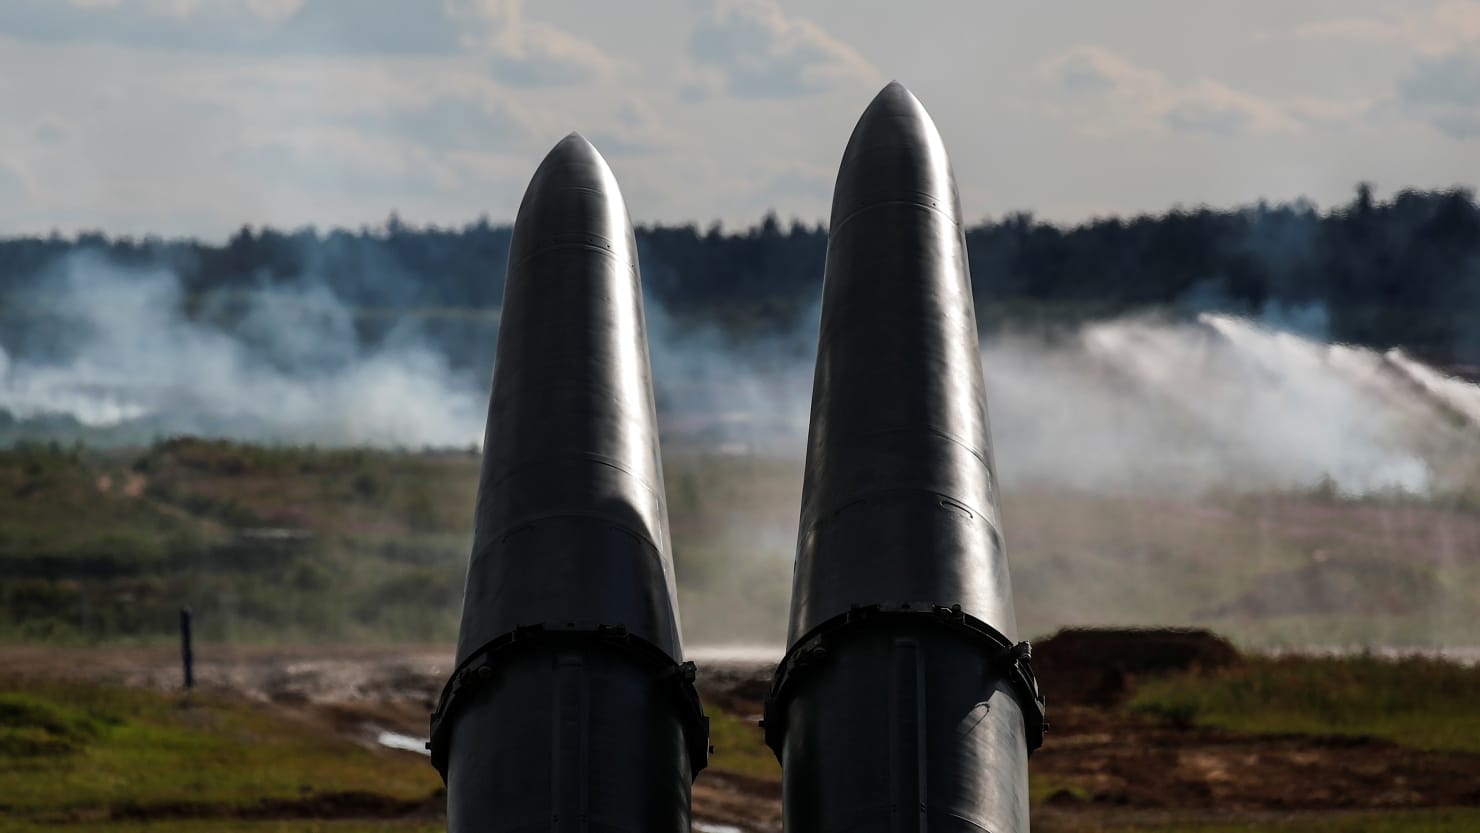 Putin acaba de realizar un simulacro de ataque con misiles con capacidad nuclear cerca de la U.E.